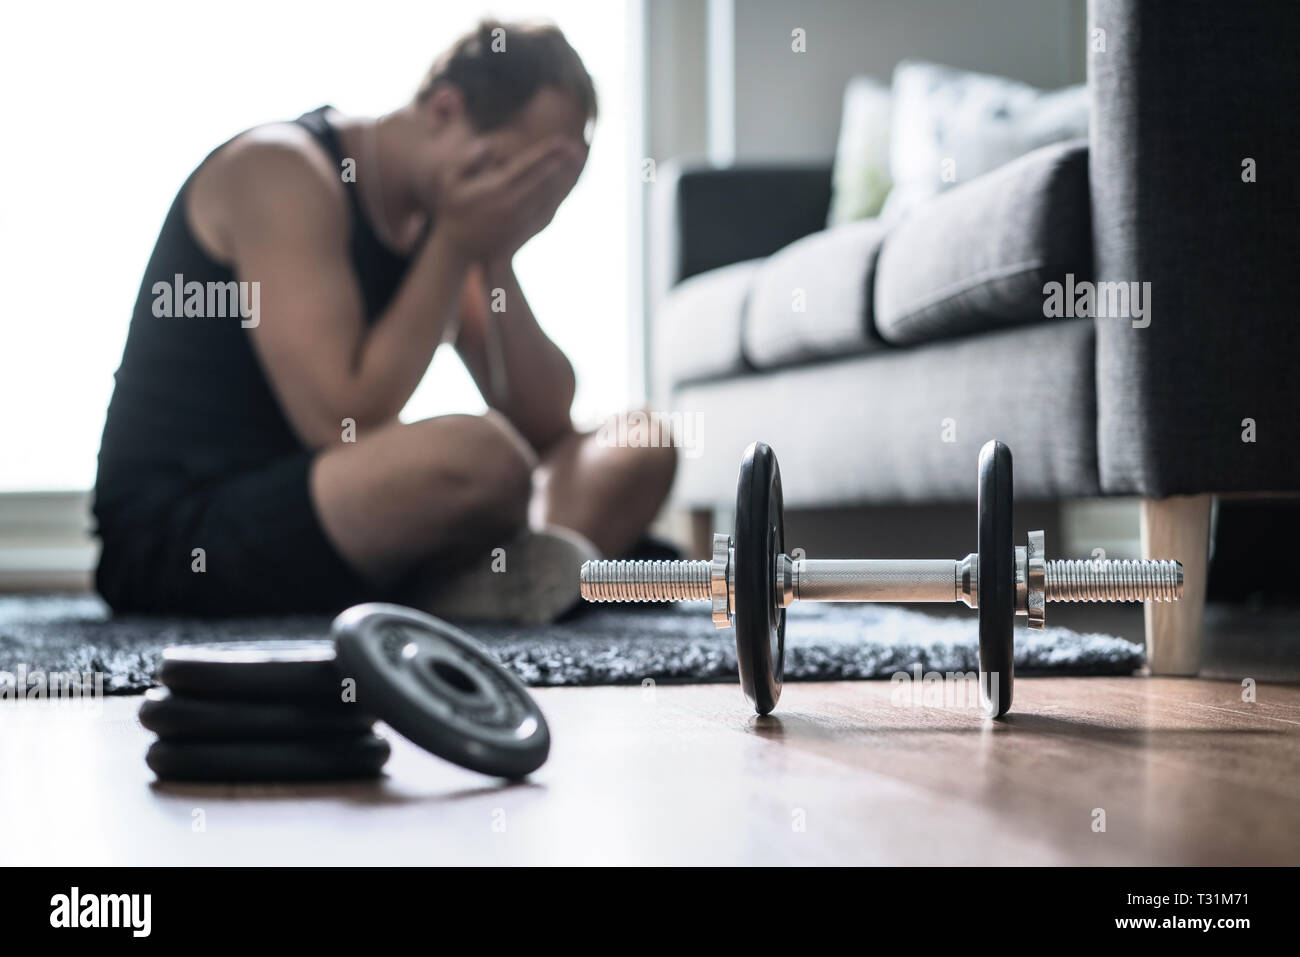 Problemi di allenamento, stress nella forma fisica o troppo allenamento. Uomo triste o stanco che ha problemi con l'addestramento eccessivo. Atleta sfinito e infelice. Foto Stock